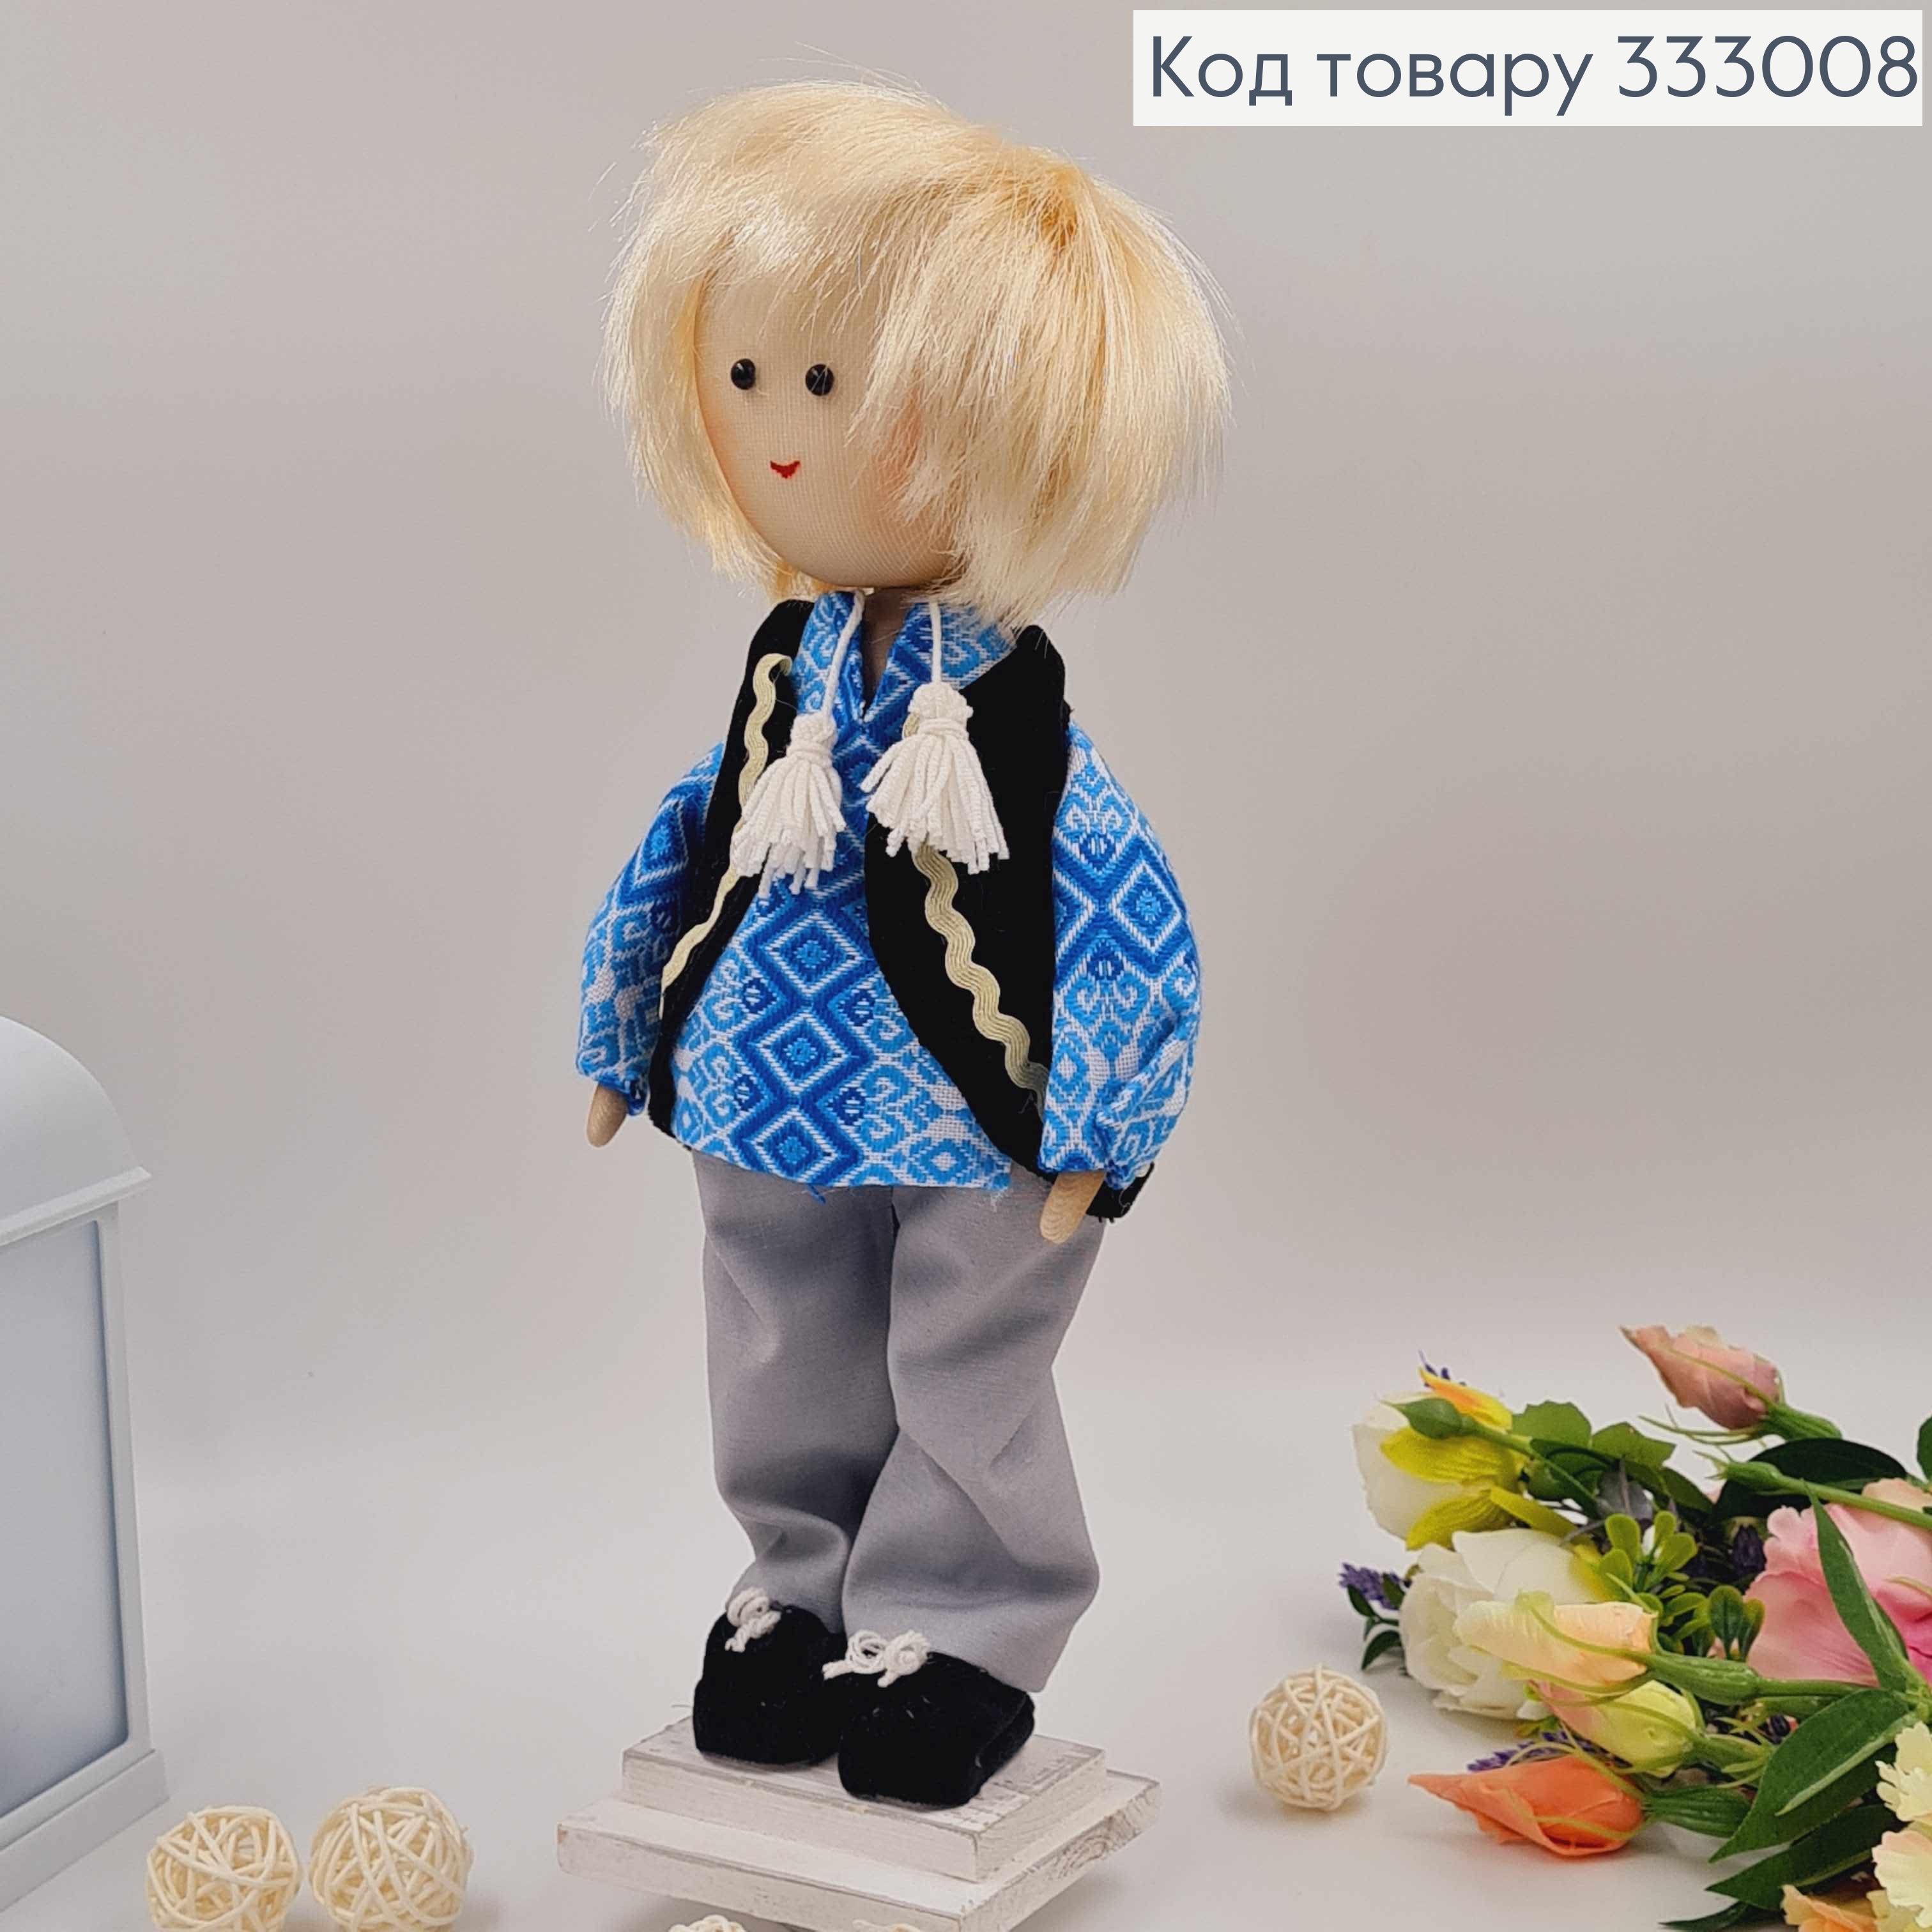 Лялька ХЛОПЧИК,"Білявий" в блакитній сорочці, висота 34см, ручна робота, Україна 333008 фото 2